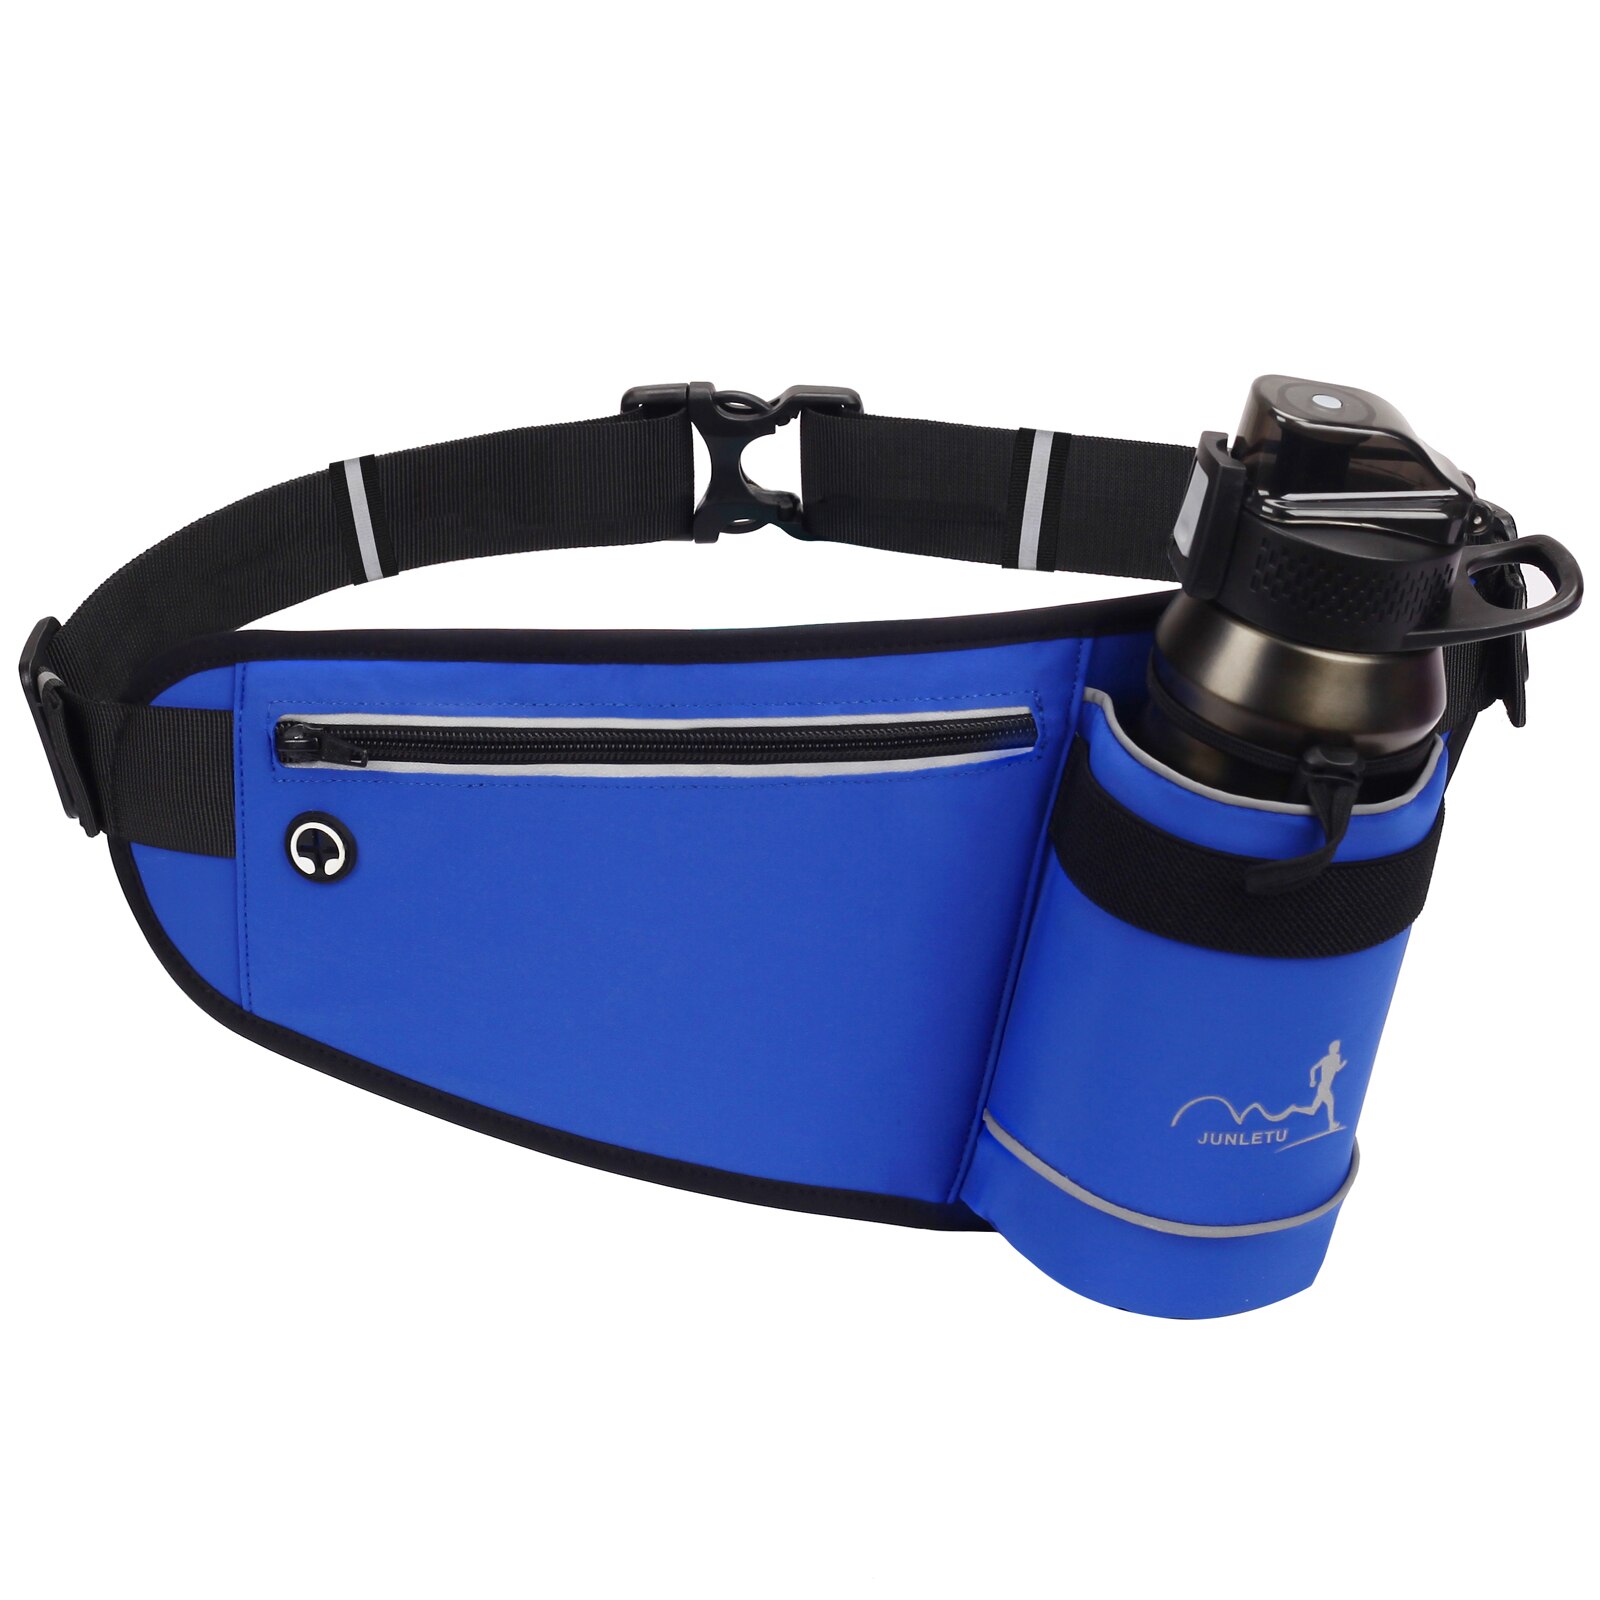 Udendørs sport hydrering talje bæltetaske med vandflaskeholder til jogging løb vandring camping cykling gå talje pakke